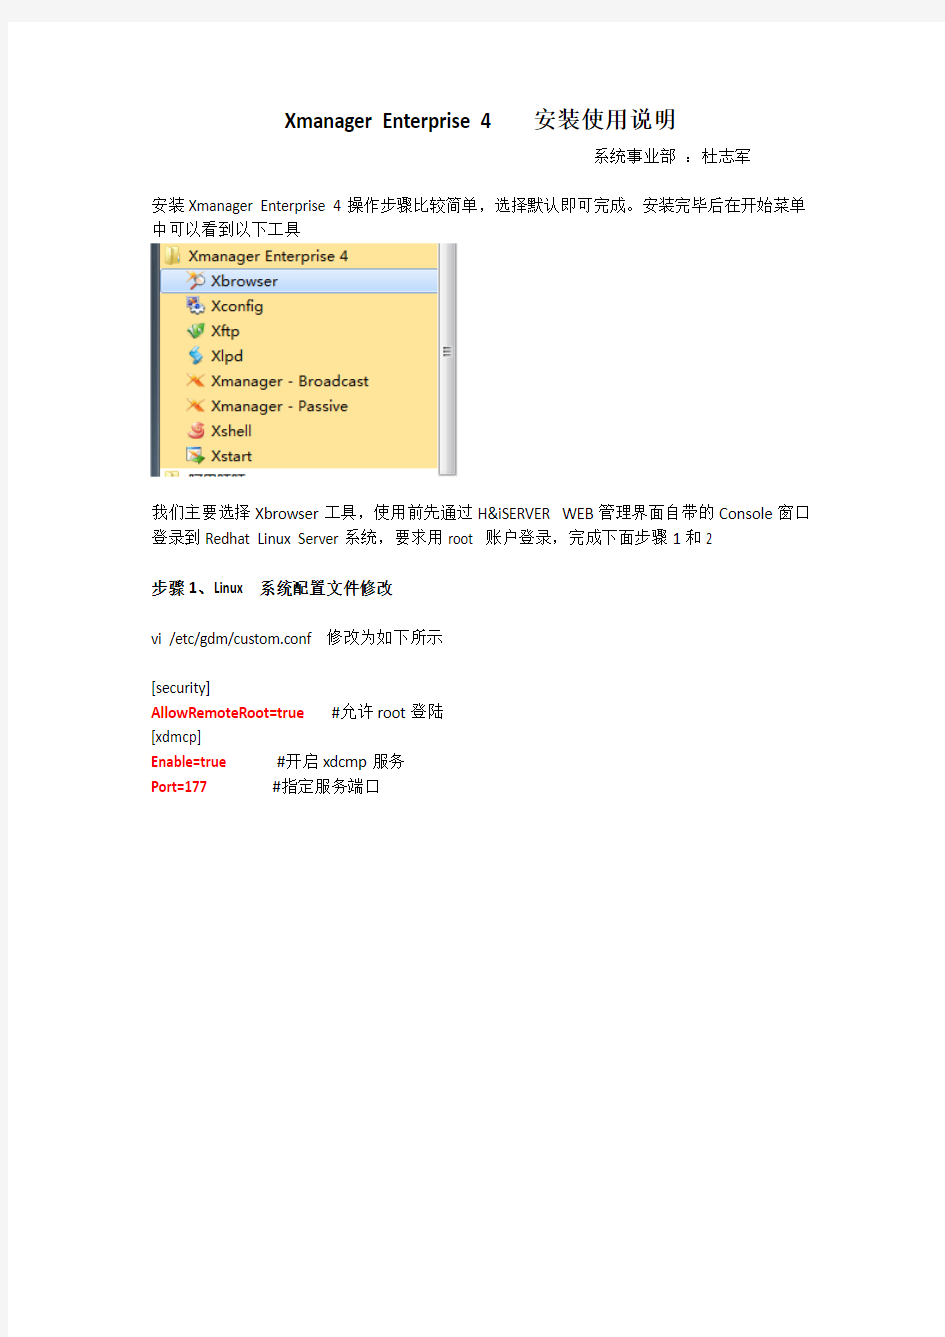 Xmanager_Enterprise 使用说明(for H&iSERVER)